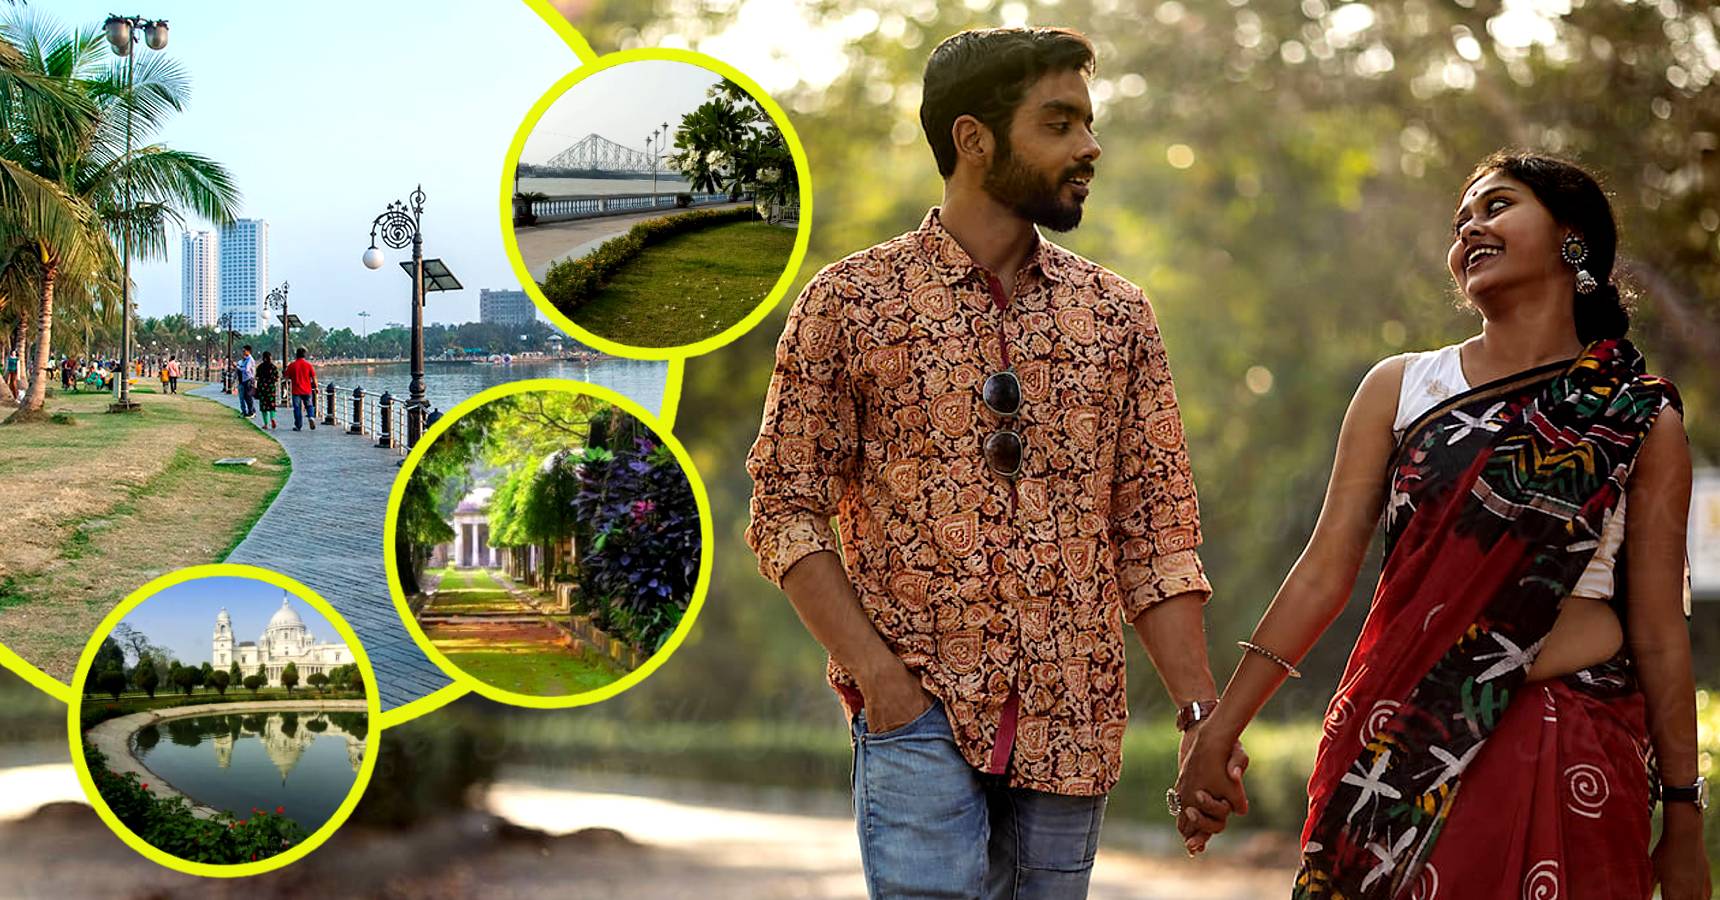 Top 7 parks in Kolkata to spend Valentine’s Day